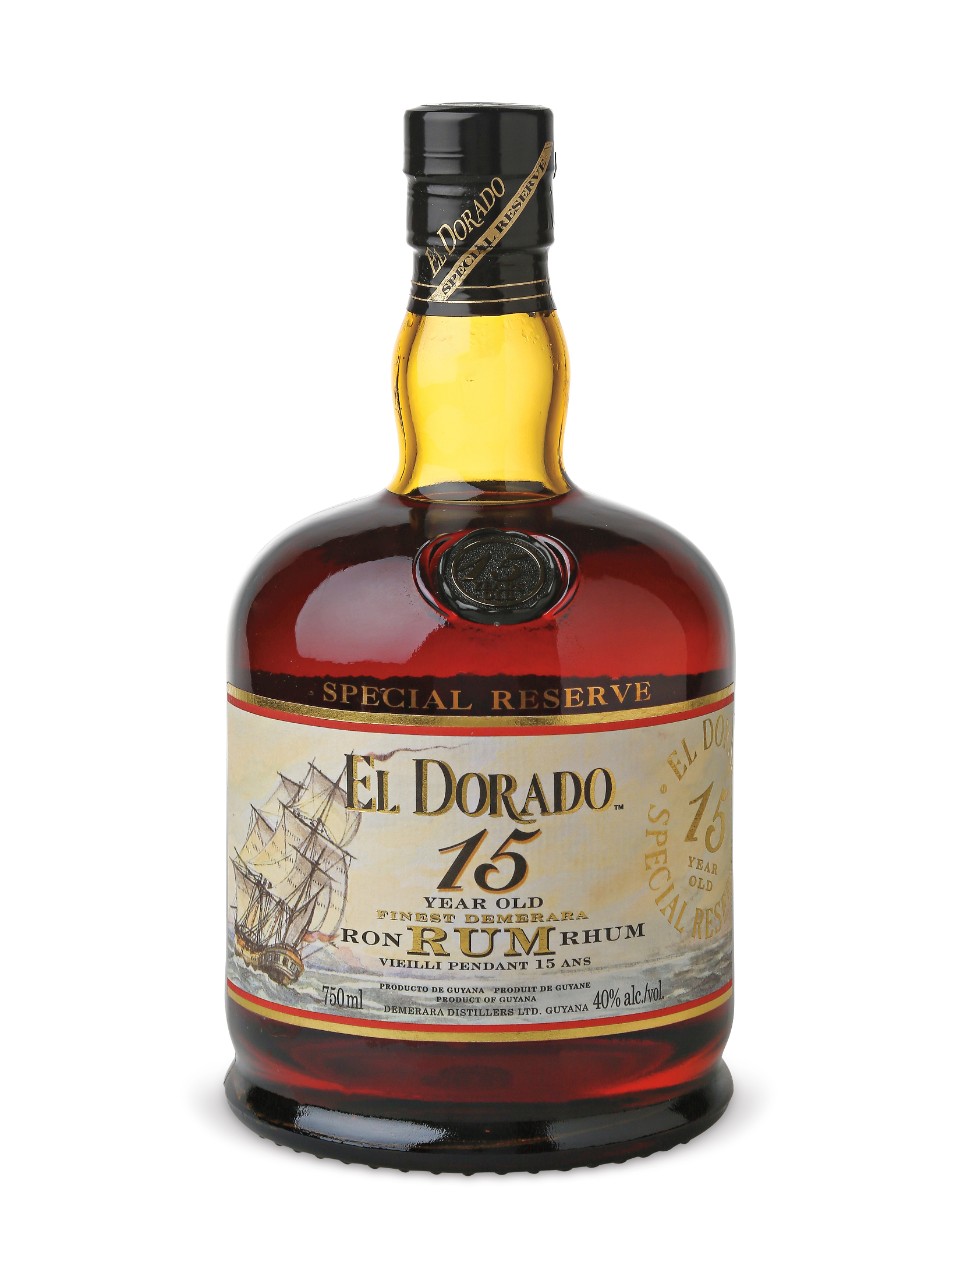 El Dorado Special Reserve 15 Years Old Rum